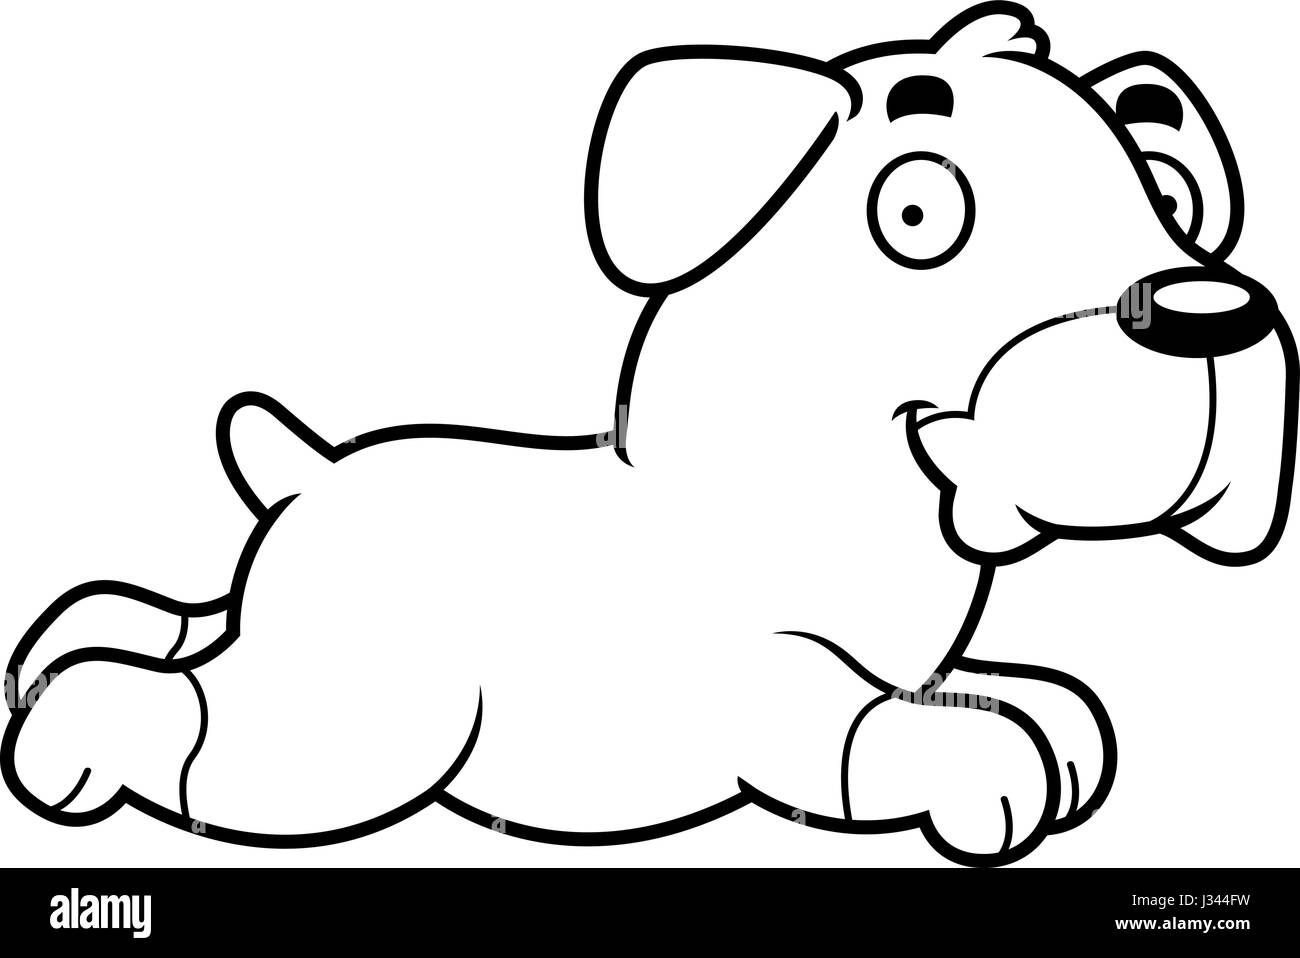 Un cartoon illustrazione di un rottweiler in esecuzione. Illustrazione Vettoriale